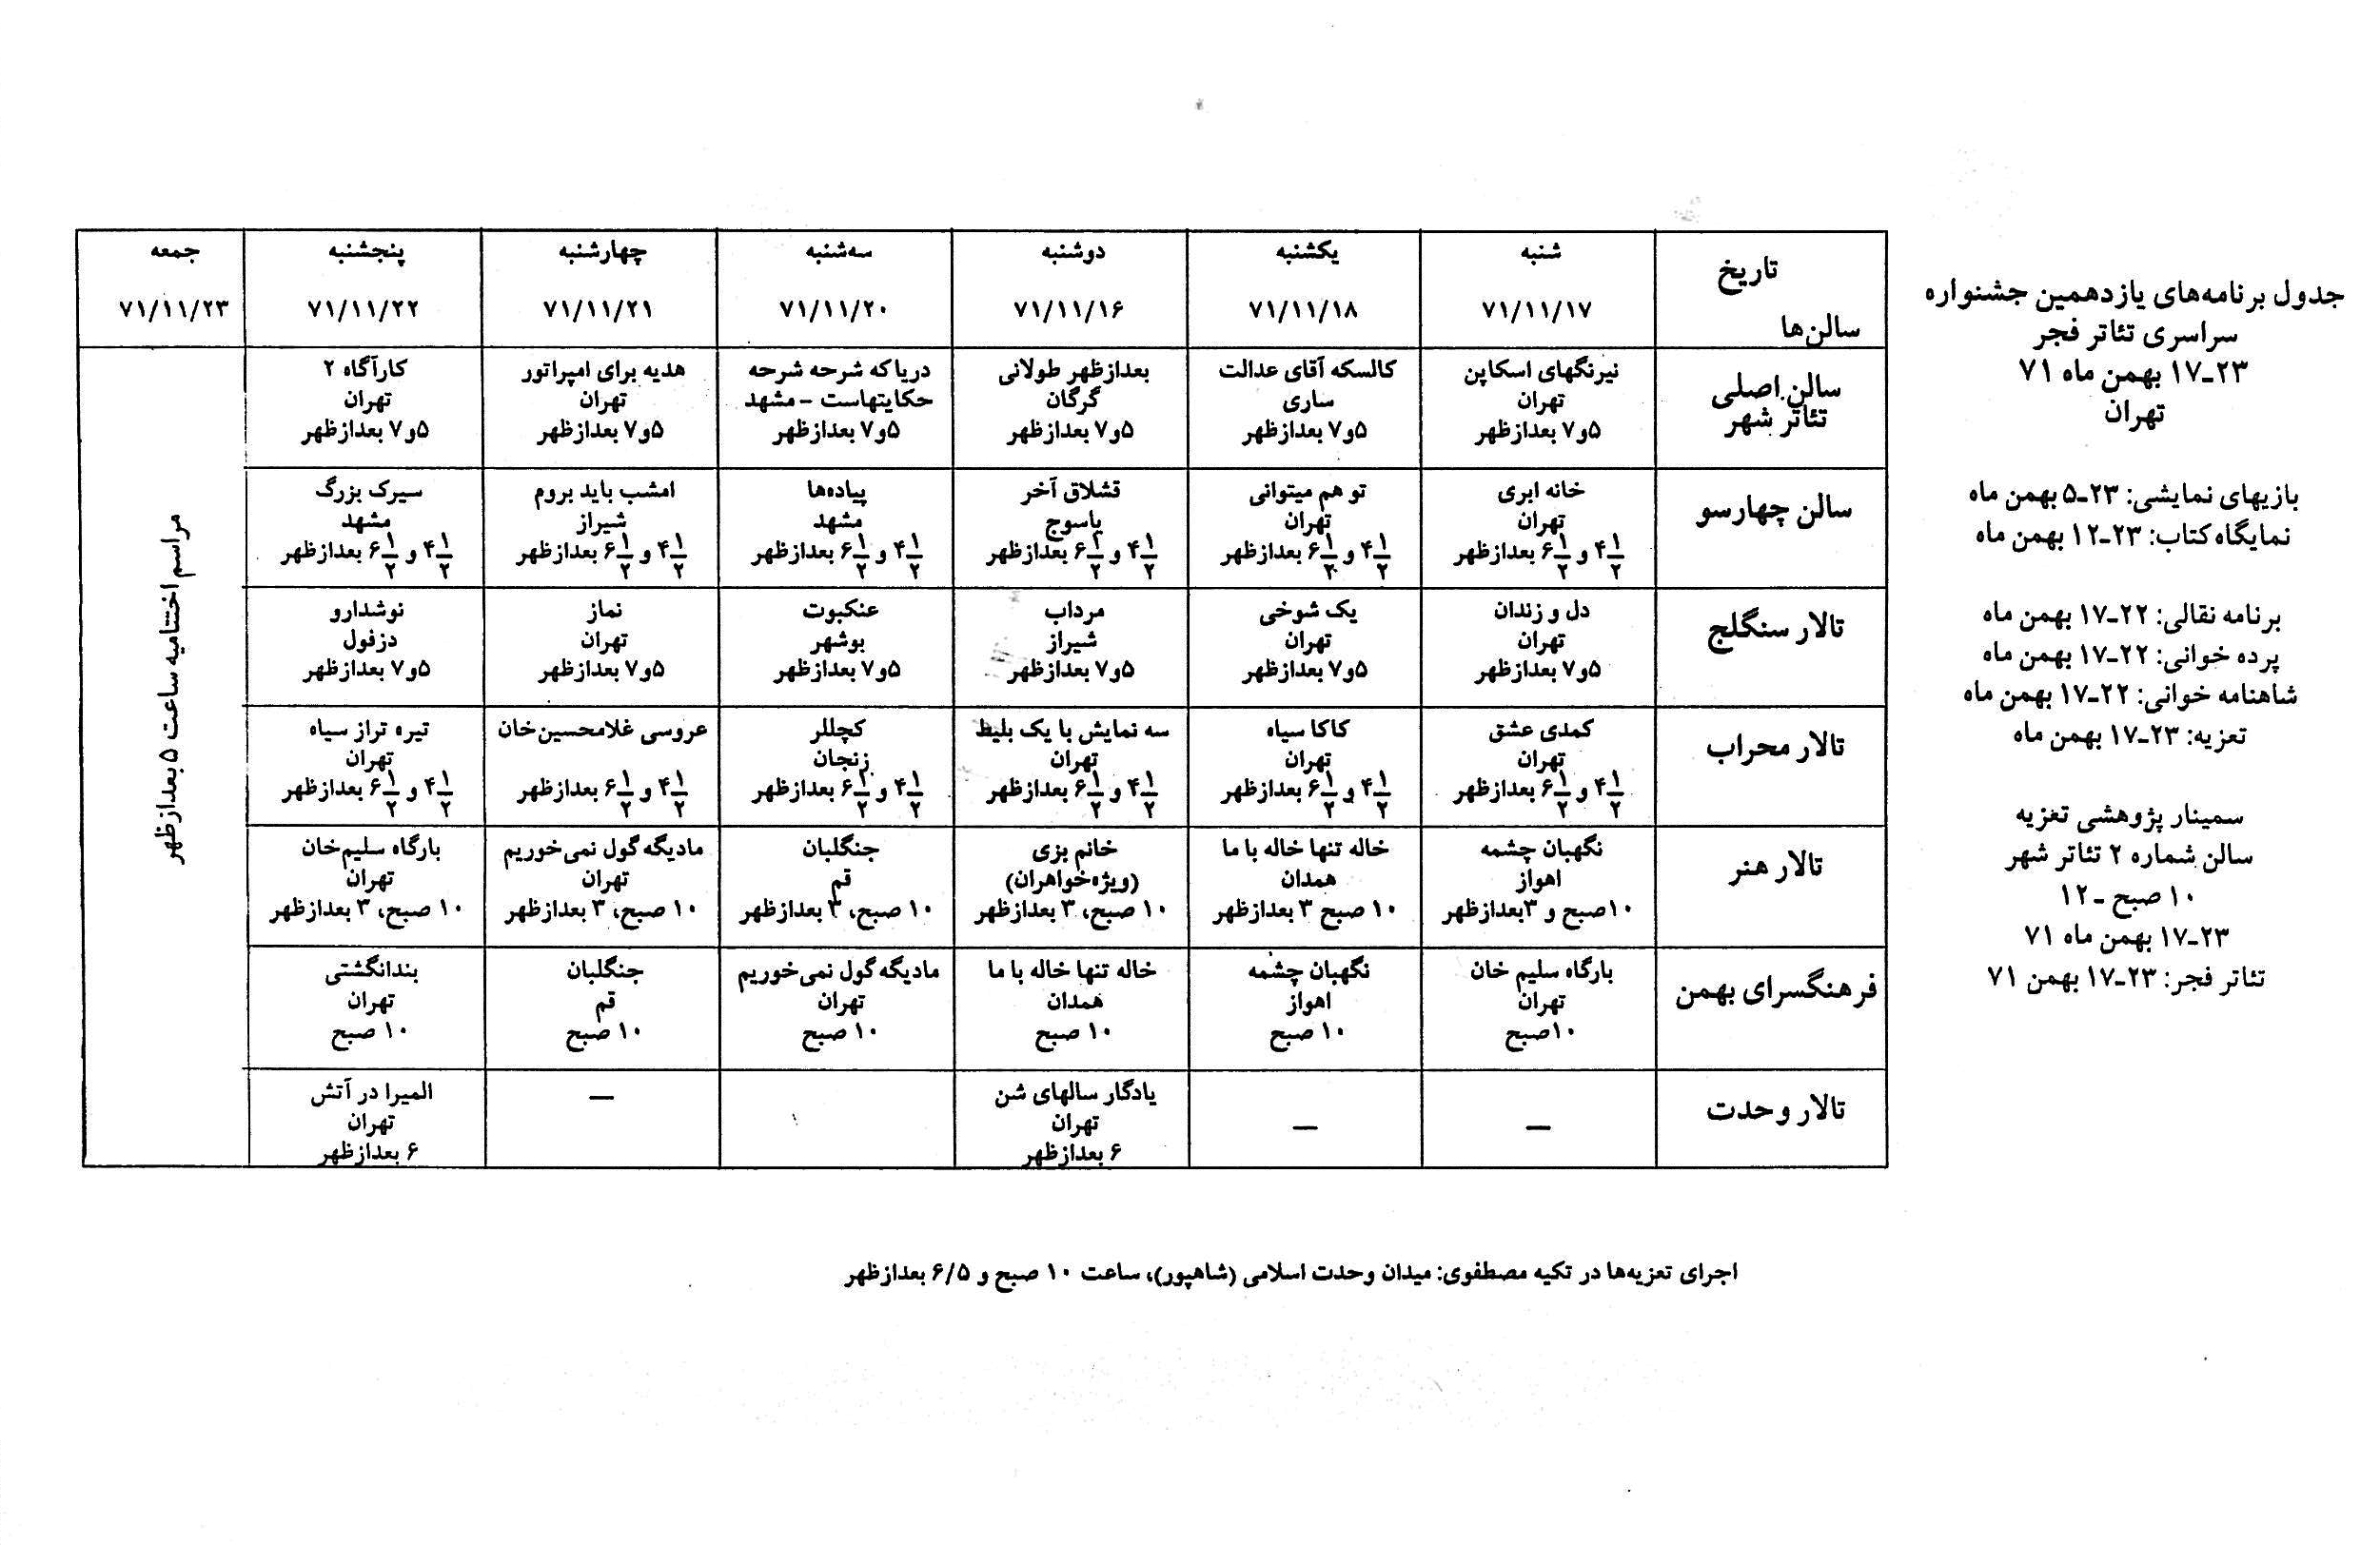 جدول دوره 11-2